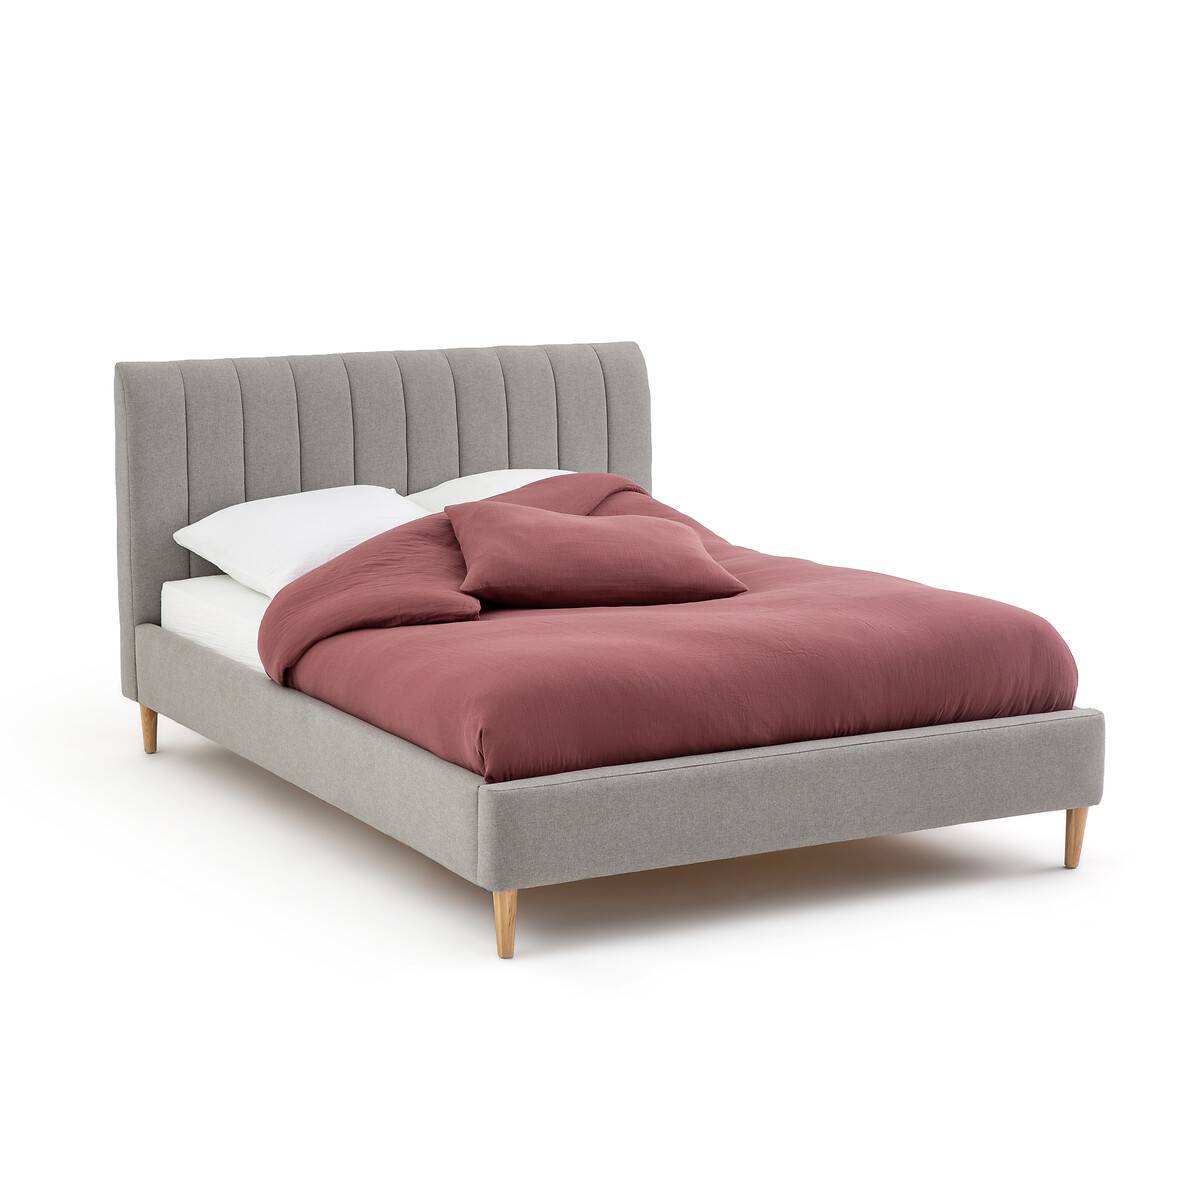 Кровати с мягким изголовьем Кровать siléa (laredoute) серый 153x101x213 см.